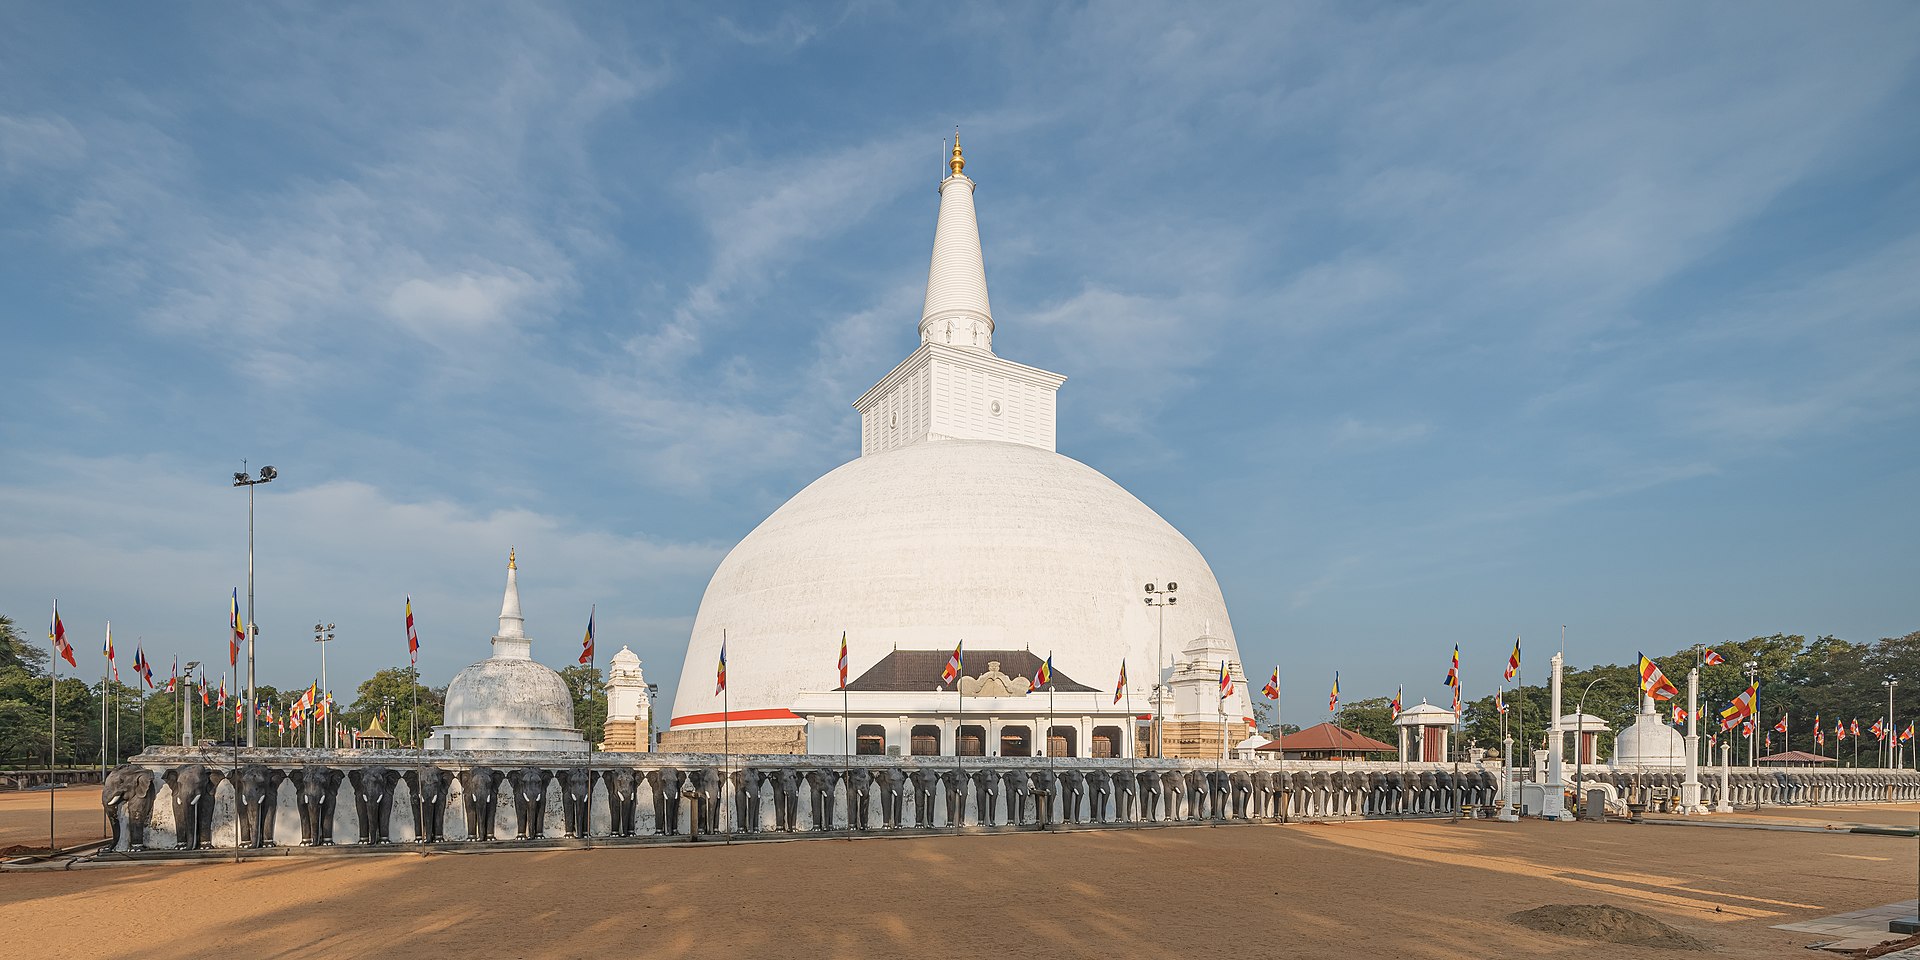 Present day Anuradhapura. Wikipedia